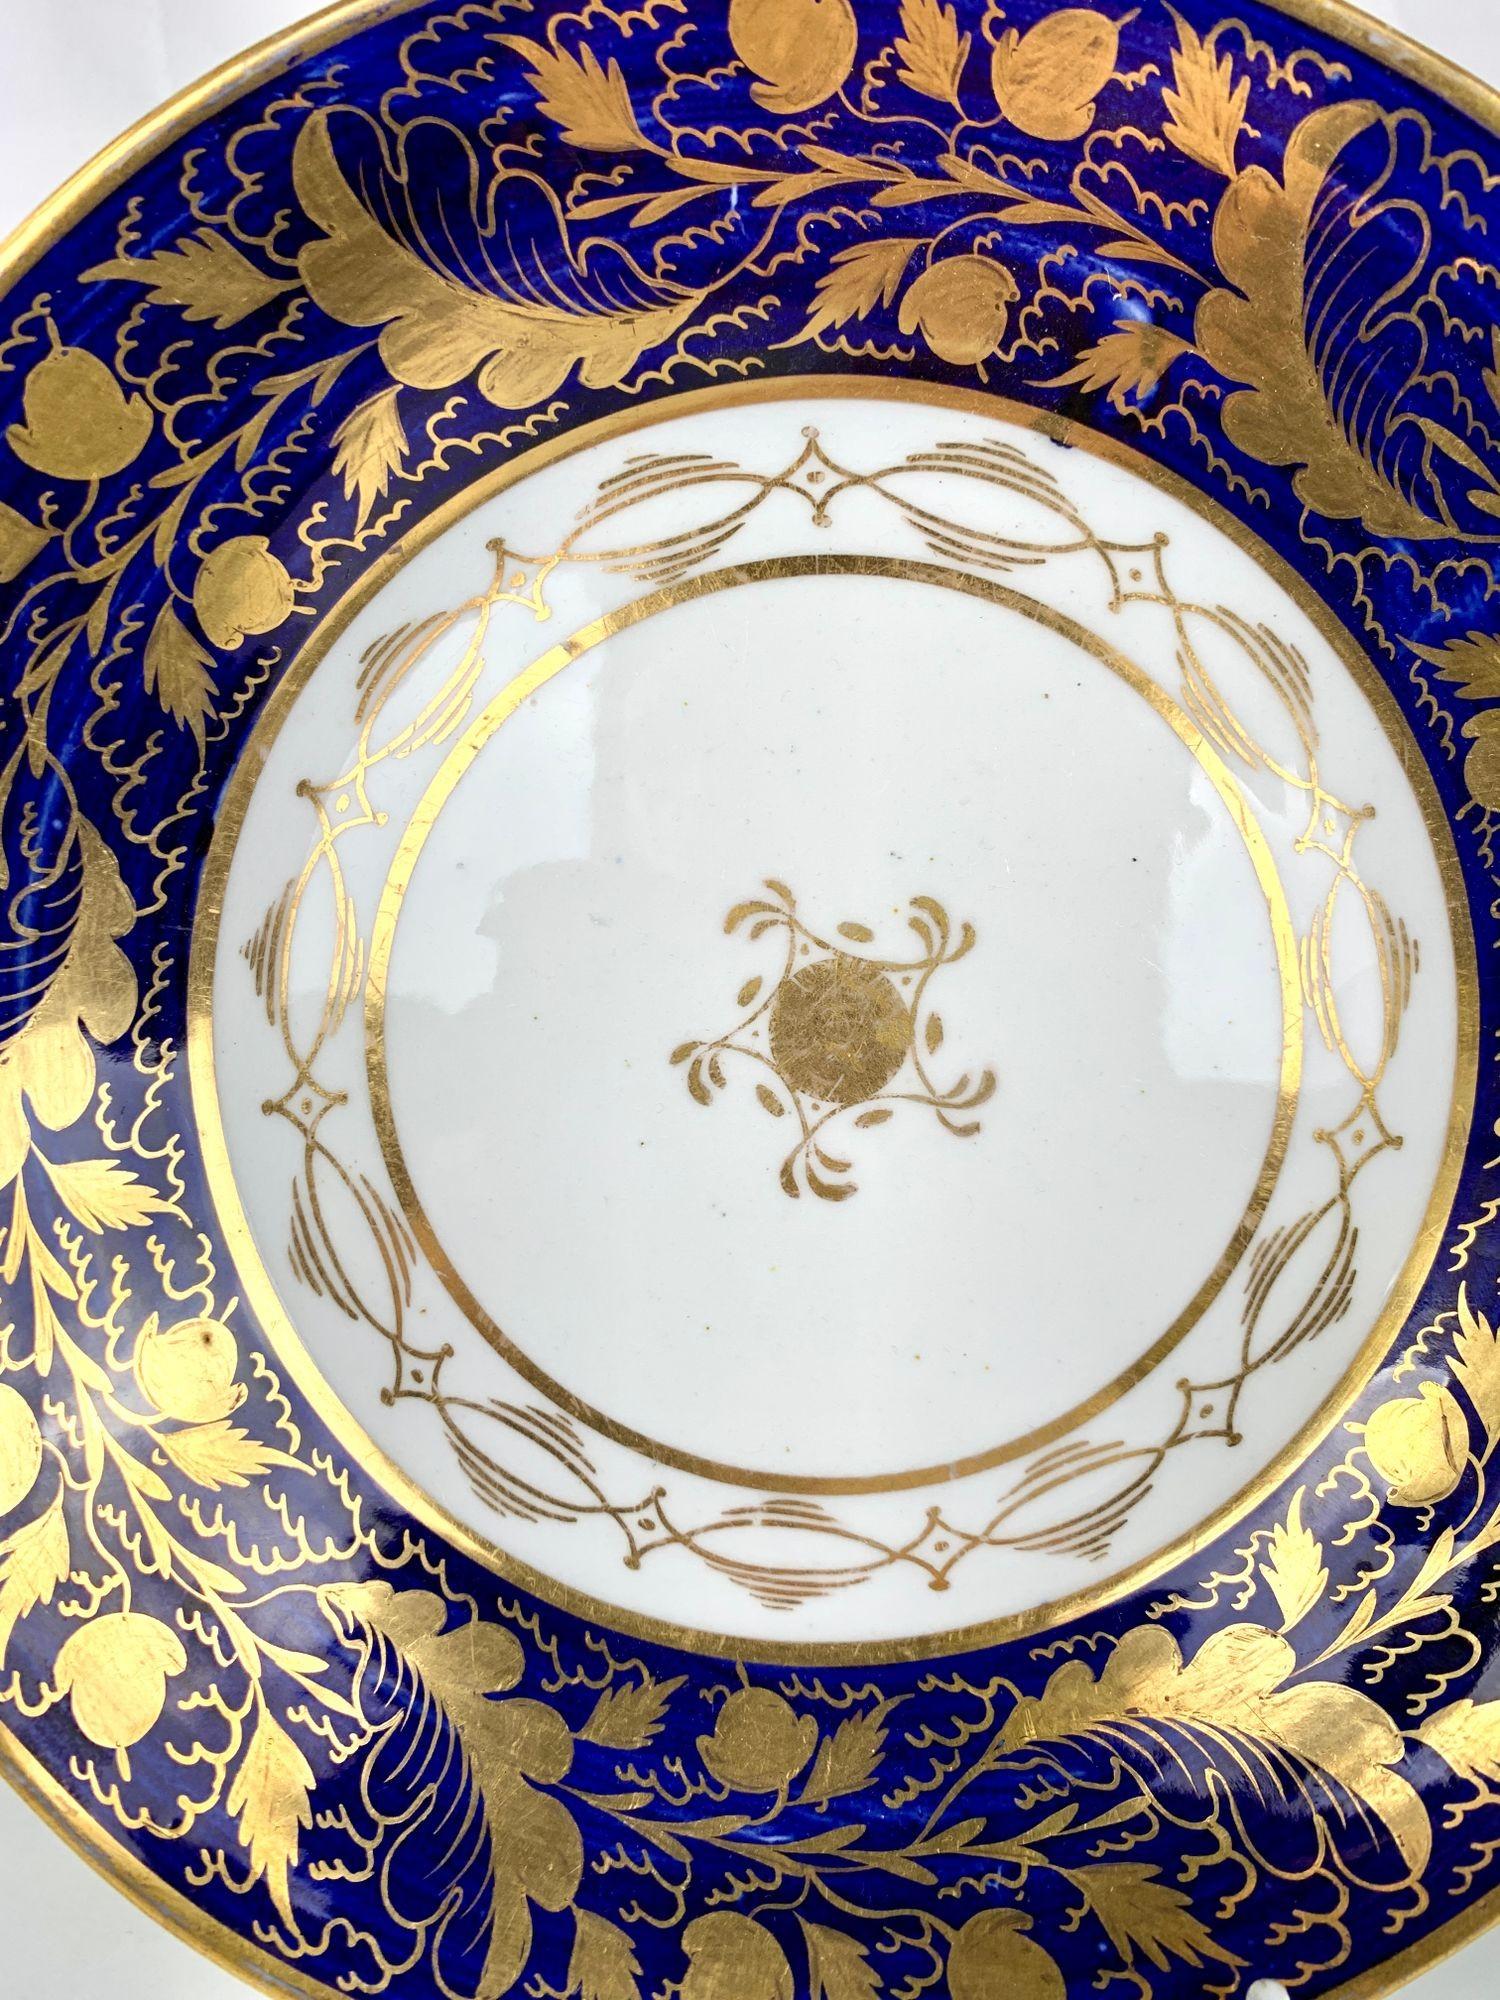 La New Hall China Manufactory a fabriqué cette paire de plats dorés en bleu et blanc de la fin du XVIIIe siècle à Stoke-On-Trent, en Angleterre, vers 1790. 
Sur la bordure, le bleu profond a une profondeur exceptionnelle avec de nombreux reflets de